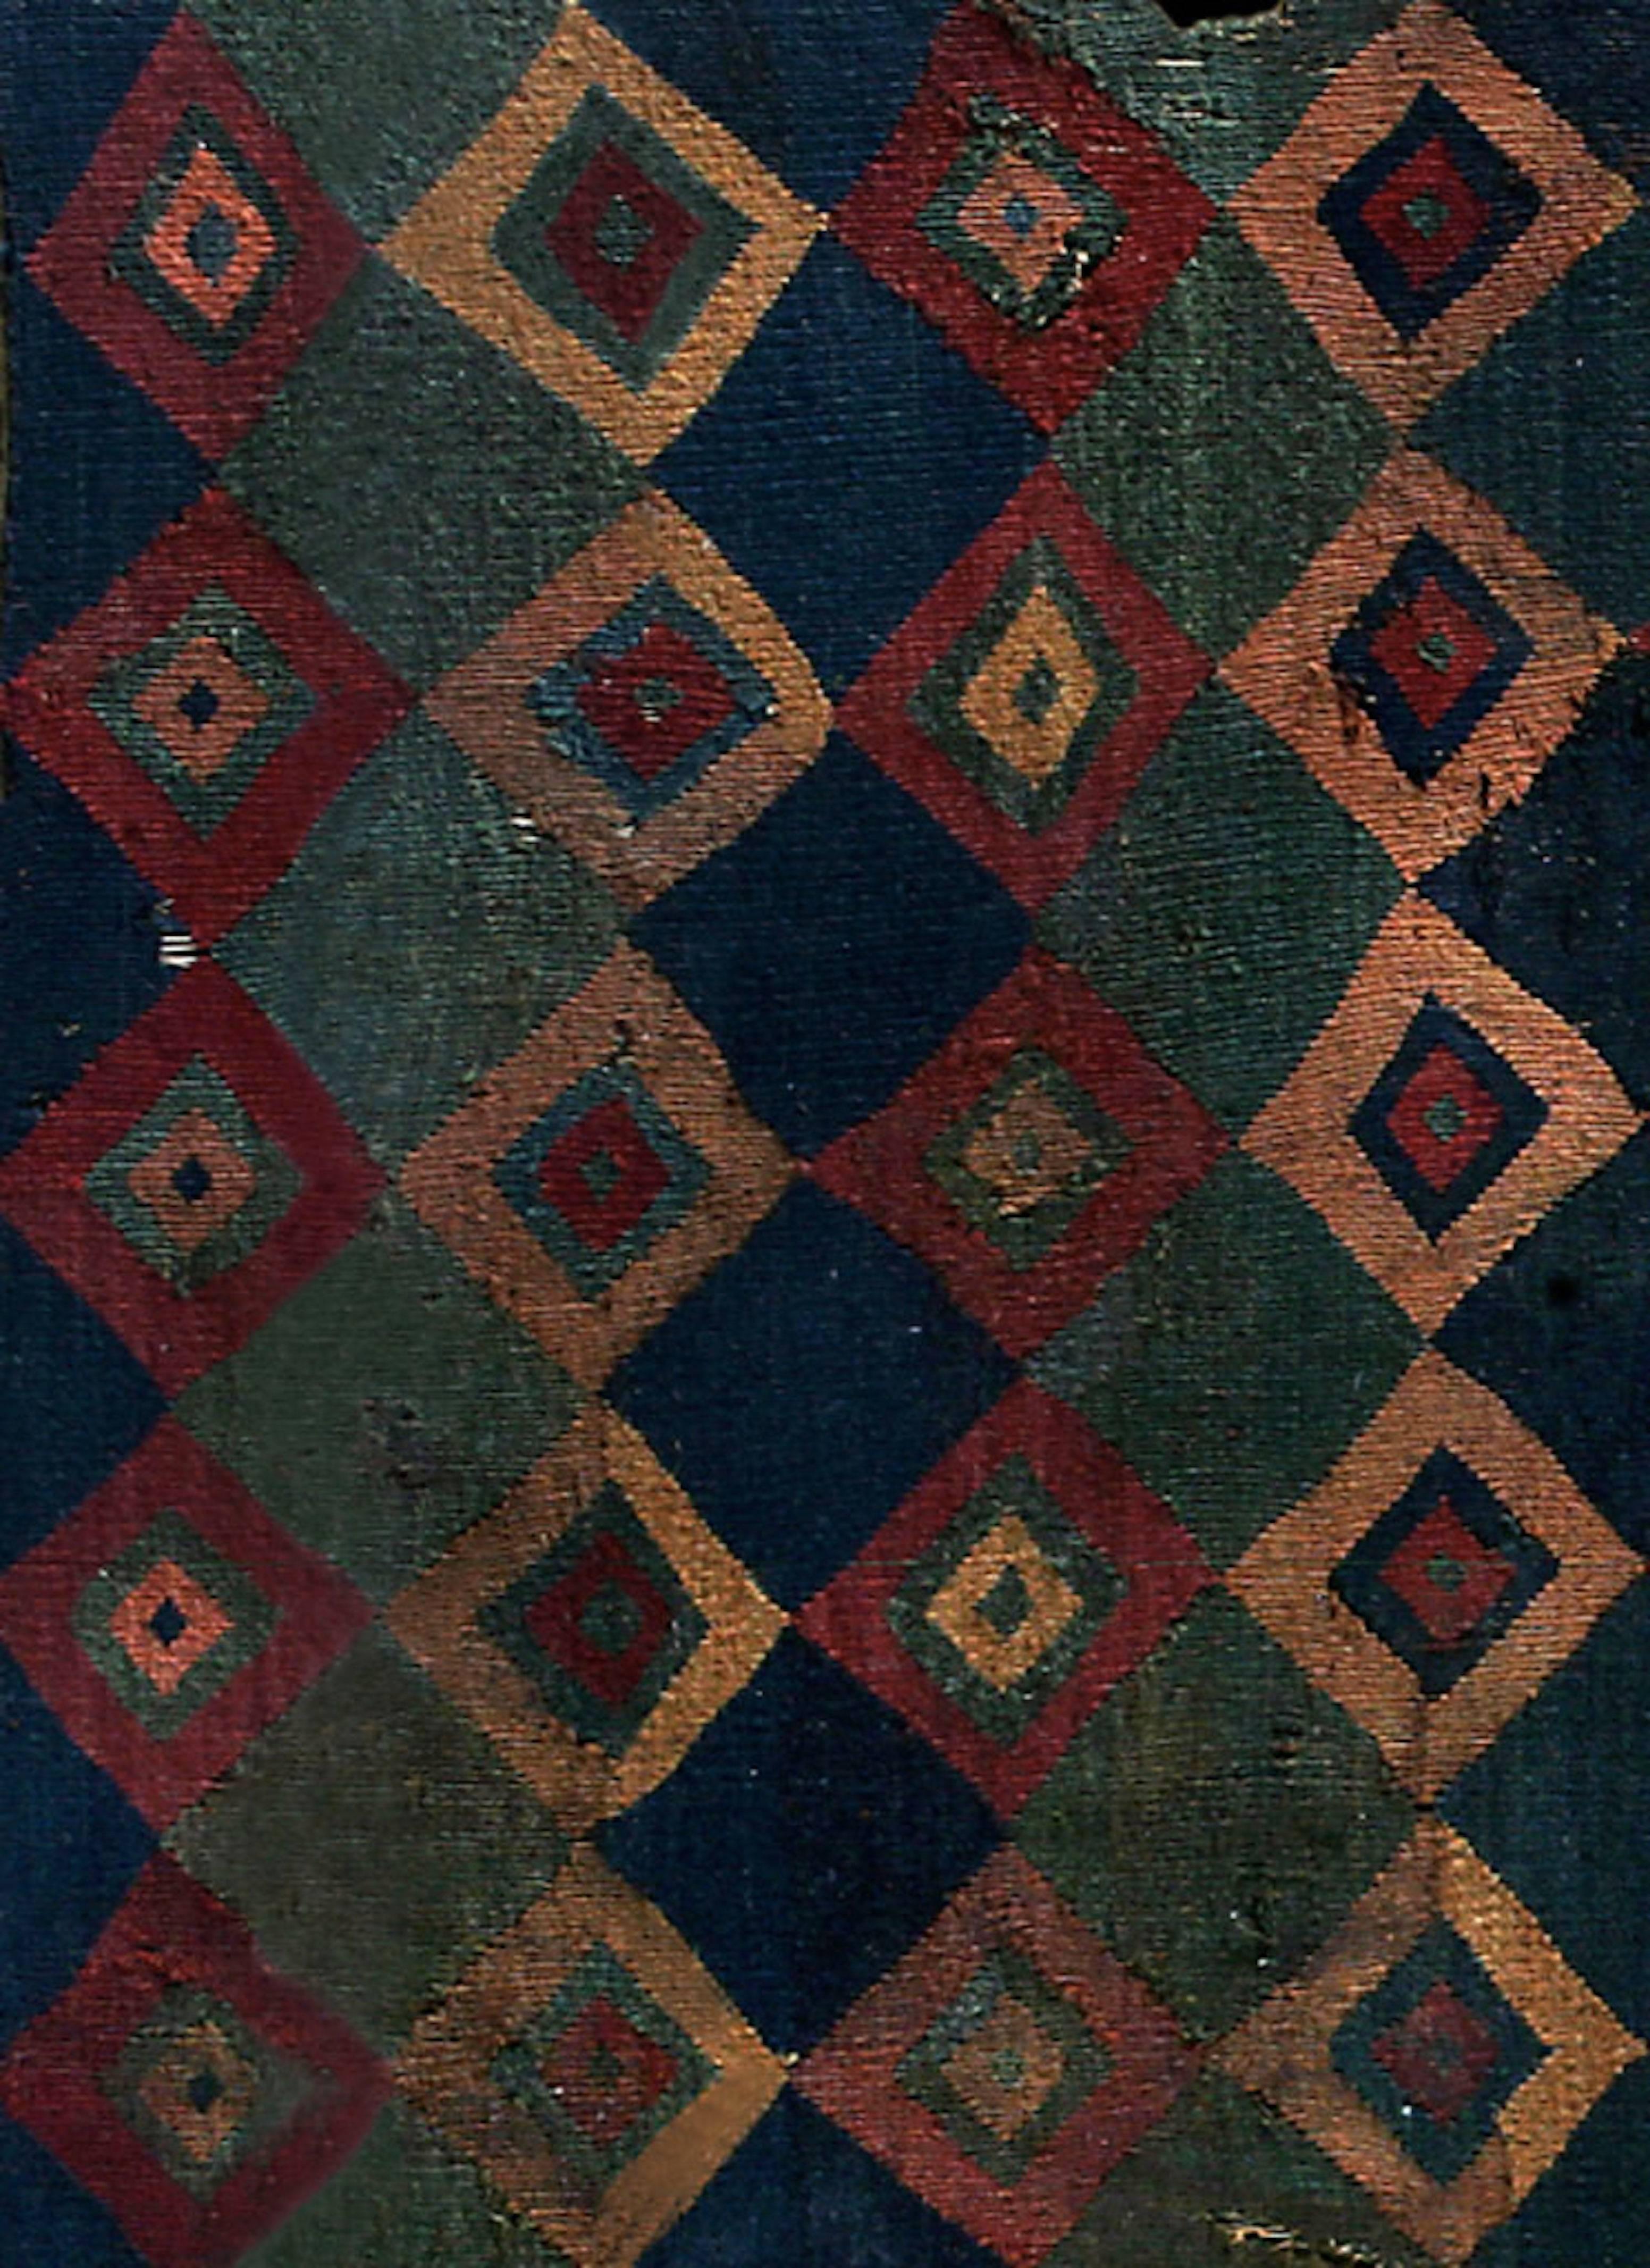 Prächtiges zeremonielles Inka-Tokapu aus mehrfarbigen geometrischen Diamantformen.

Tokapu waren Textilien, die von der Inka-Elite getragen wurden und aus geometrischen Figuren bestanden, die von Rechtecken oder Quadraten umgeben waren. Es gibt